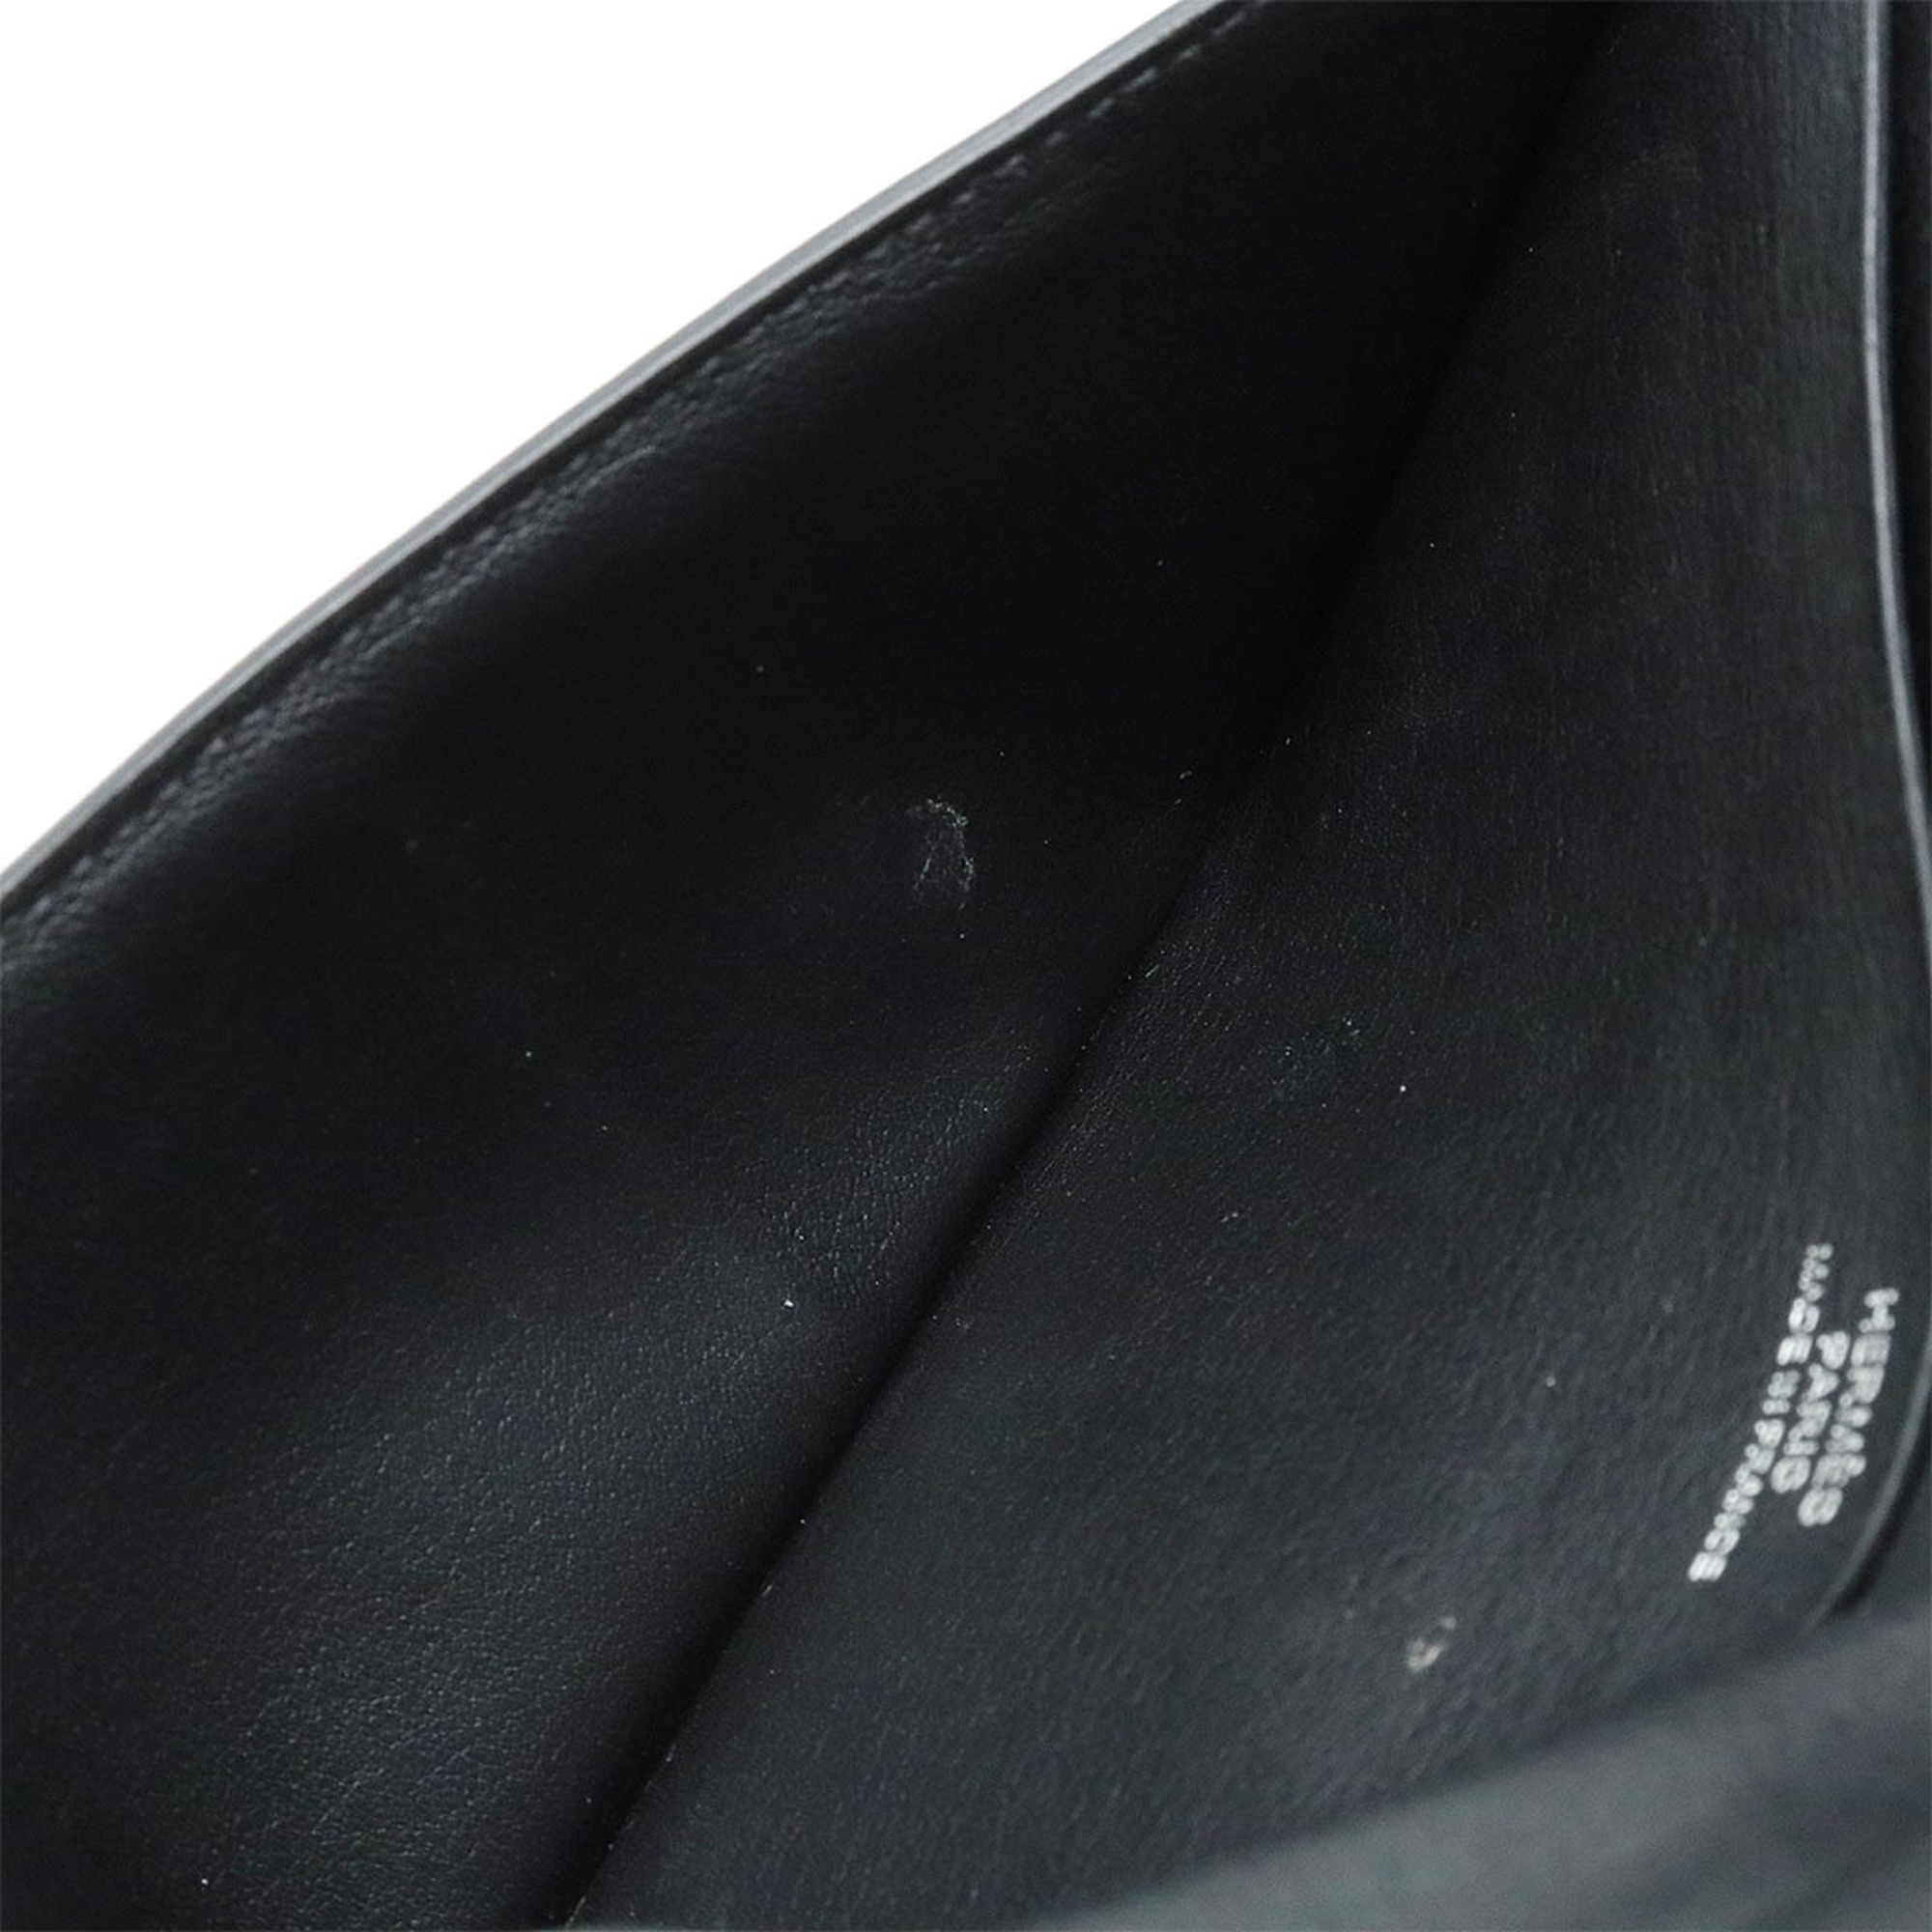 HERMES Citizen Twill Long Silkin Bi-fold Wallet Leather Black Monochrome T Engraved